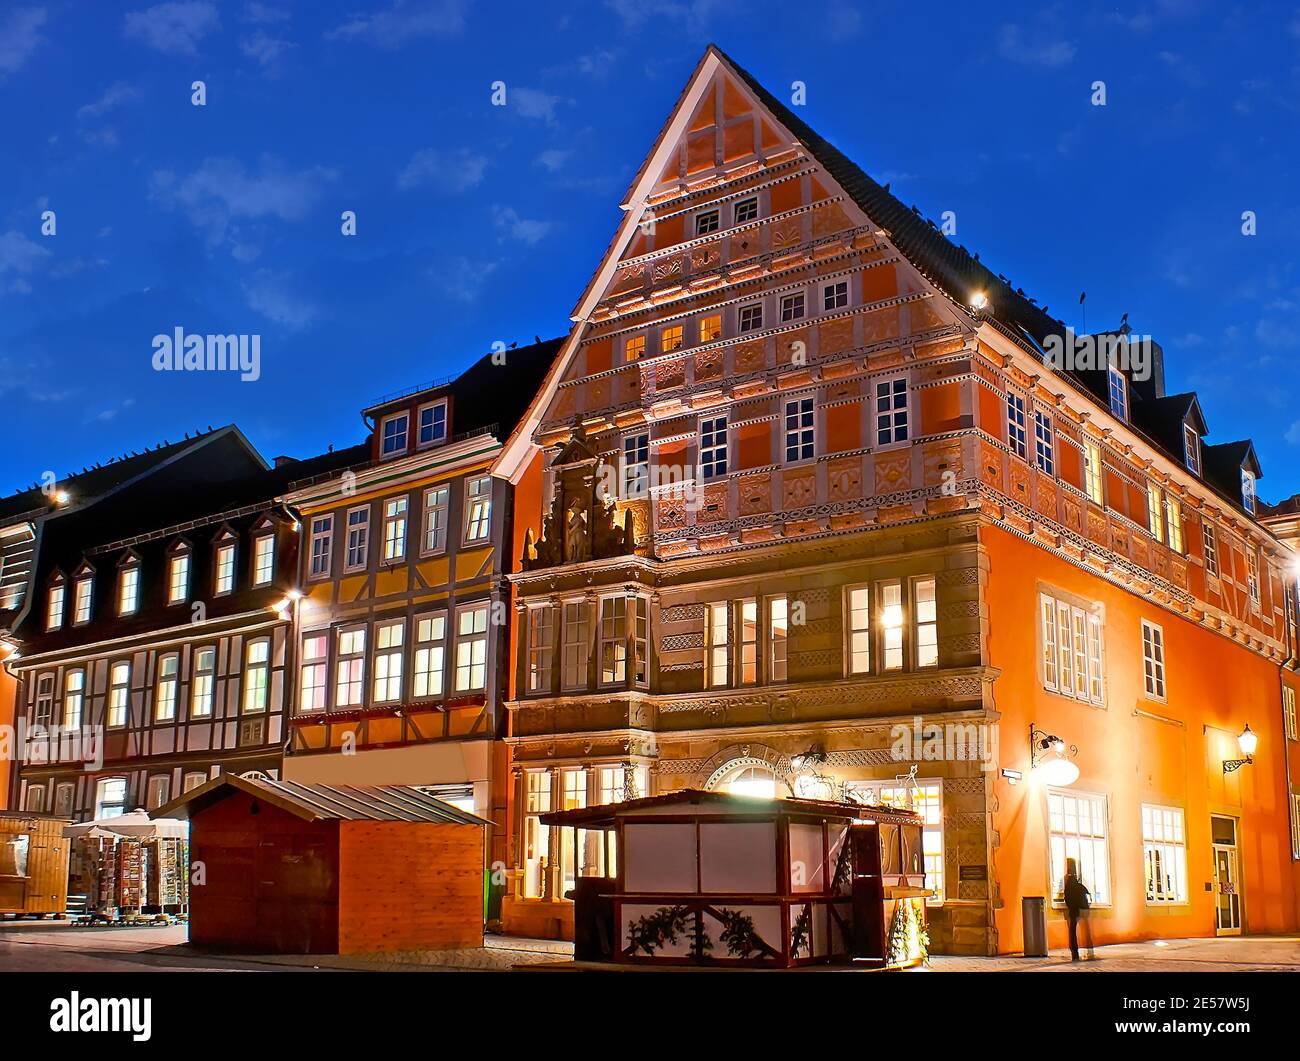 Il pittoresco palazzo medievale nel centro della città di Hamelin con decorazioni scolpite, via Ritterstrasse, Germania Foto Stock